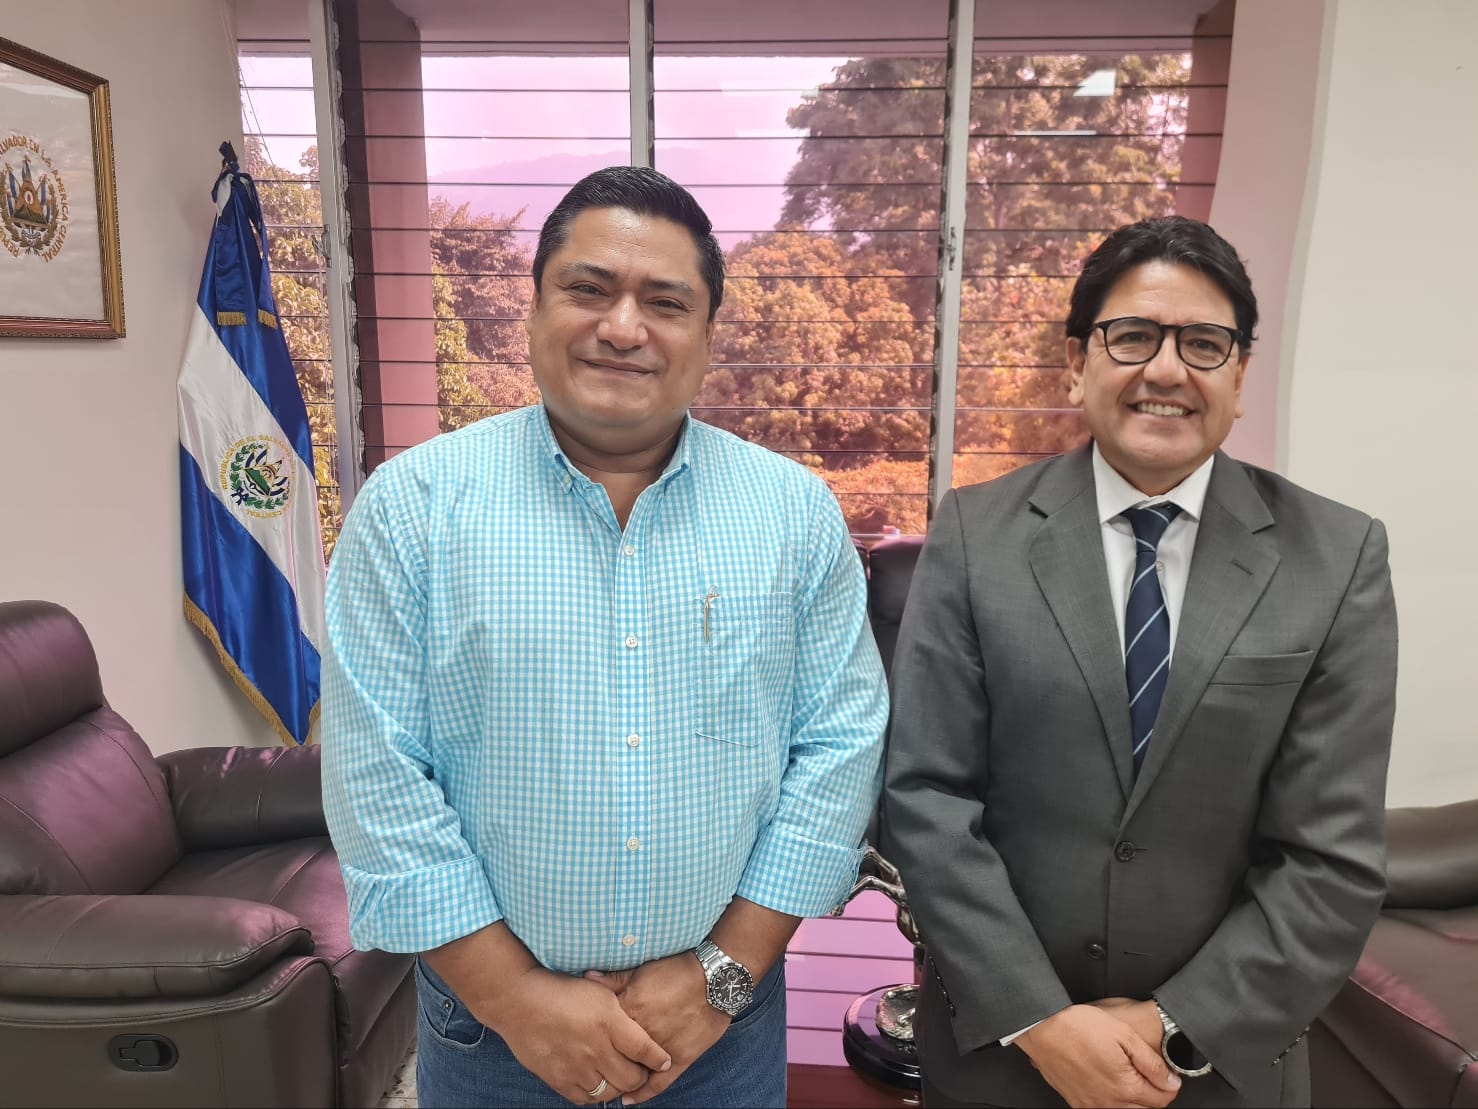 2 Mayo/22- Visita de cortesia con Ministro de Agricultura y Ganaderia, Lic. Enrique Parada(2 de mayo de 2022)